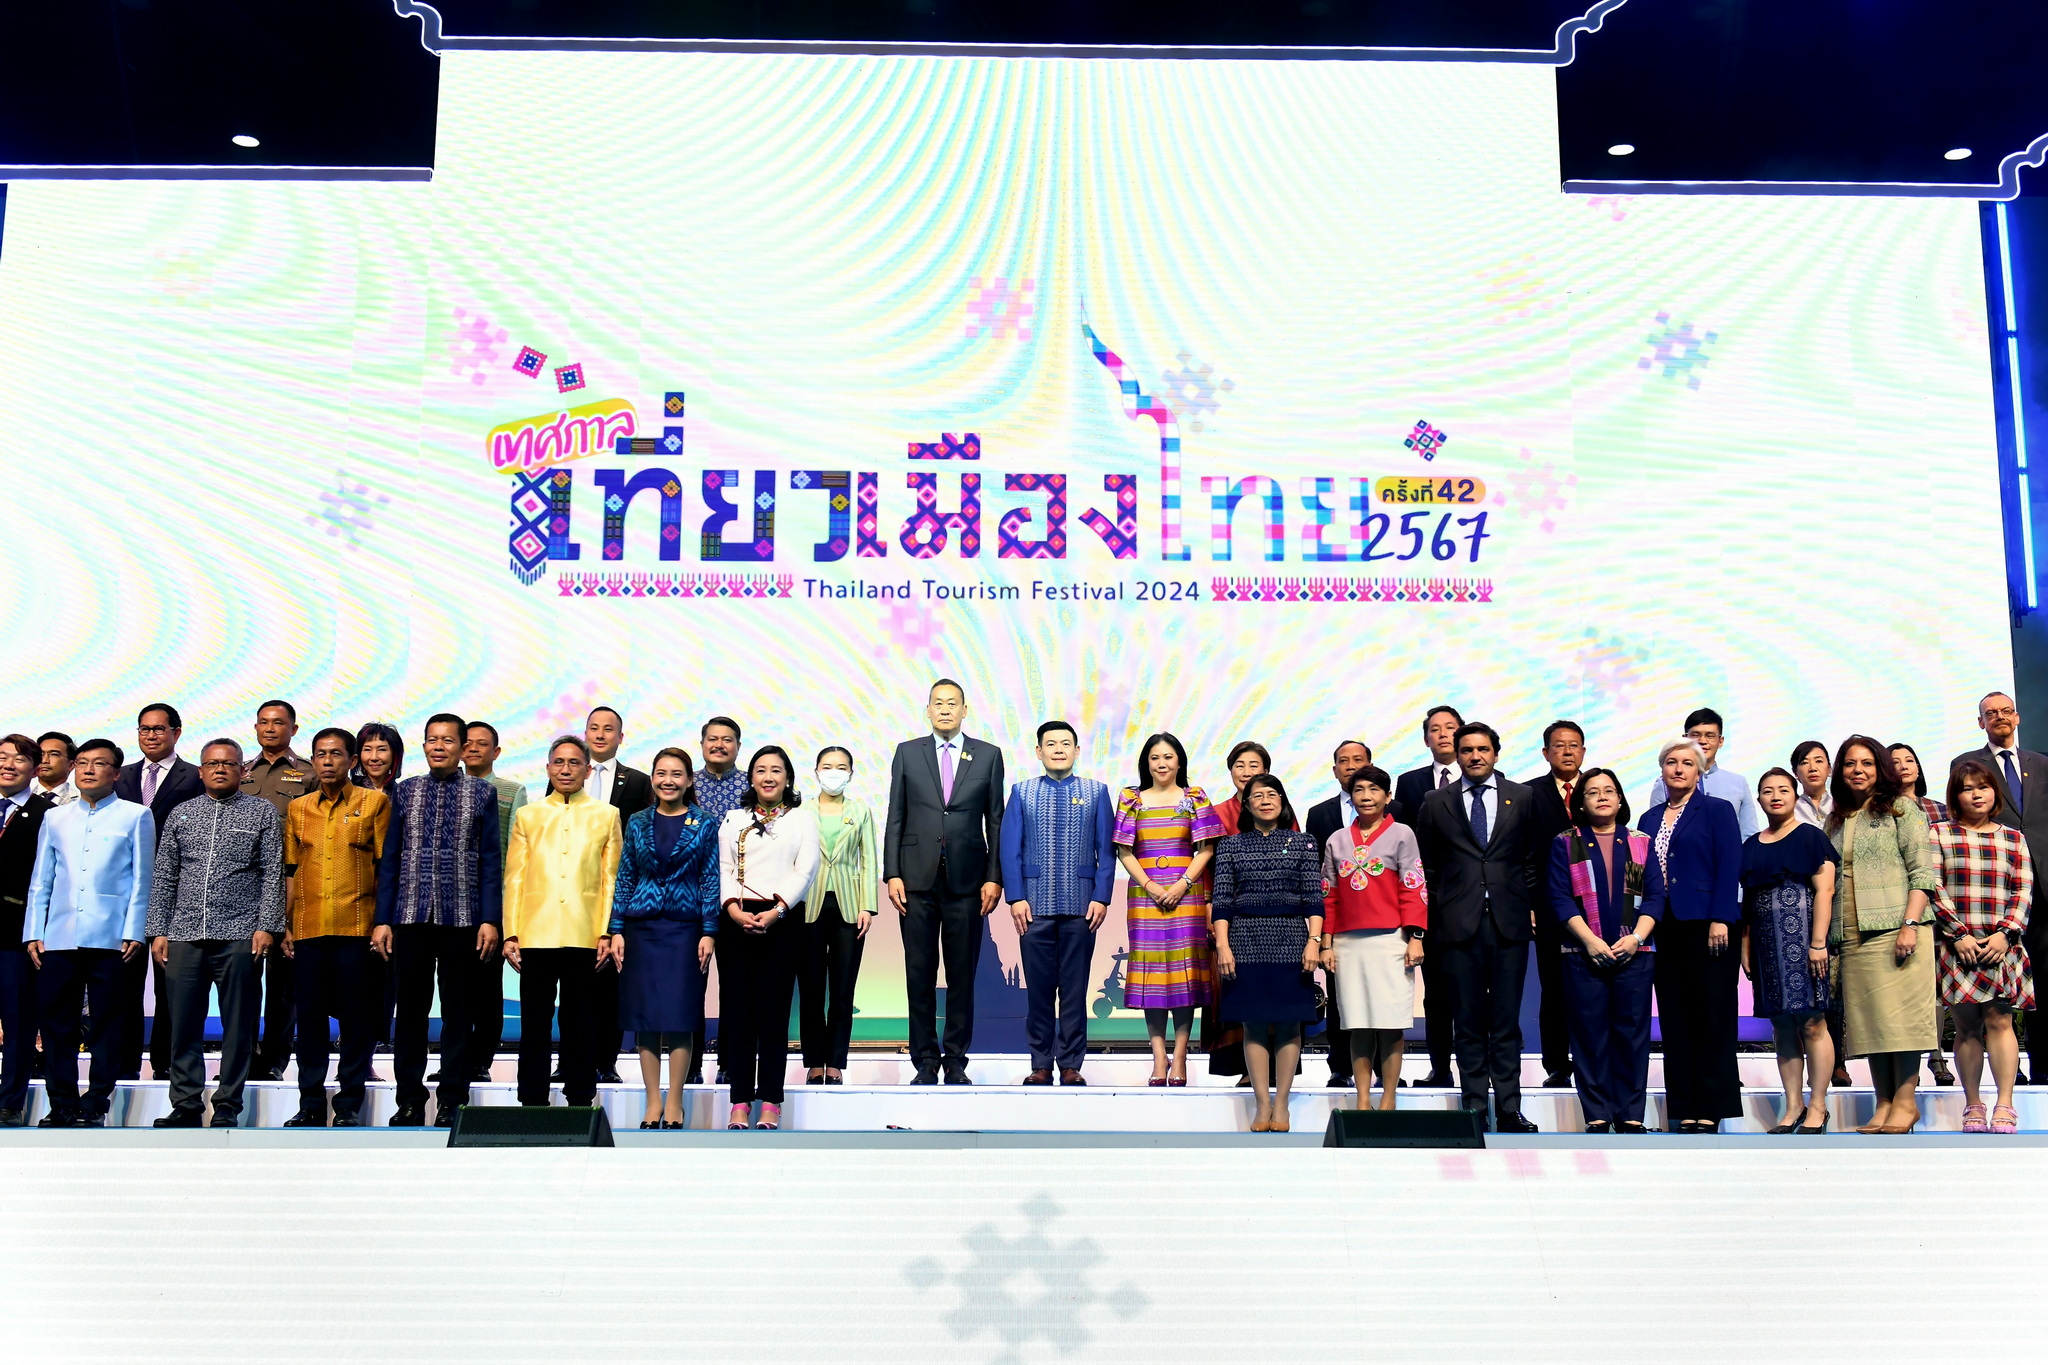 นายกฯ เปิดงานเทศกาลเที่ยวเมืองไทย ครั้งที่ 42 ปี 2567 ตั้งเป้าหมายให้ไทยเป็น Tourism Hub ยกระดับเมืองรองเป็นเมืองหลักด้านการท่องเที่ยว เชิญชวนคนไทยเที่ยวเมืองไทยไปด้วยกัน